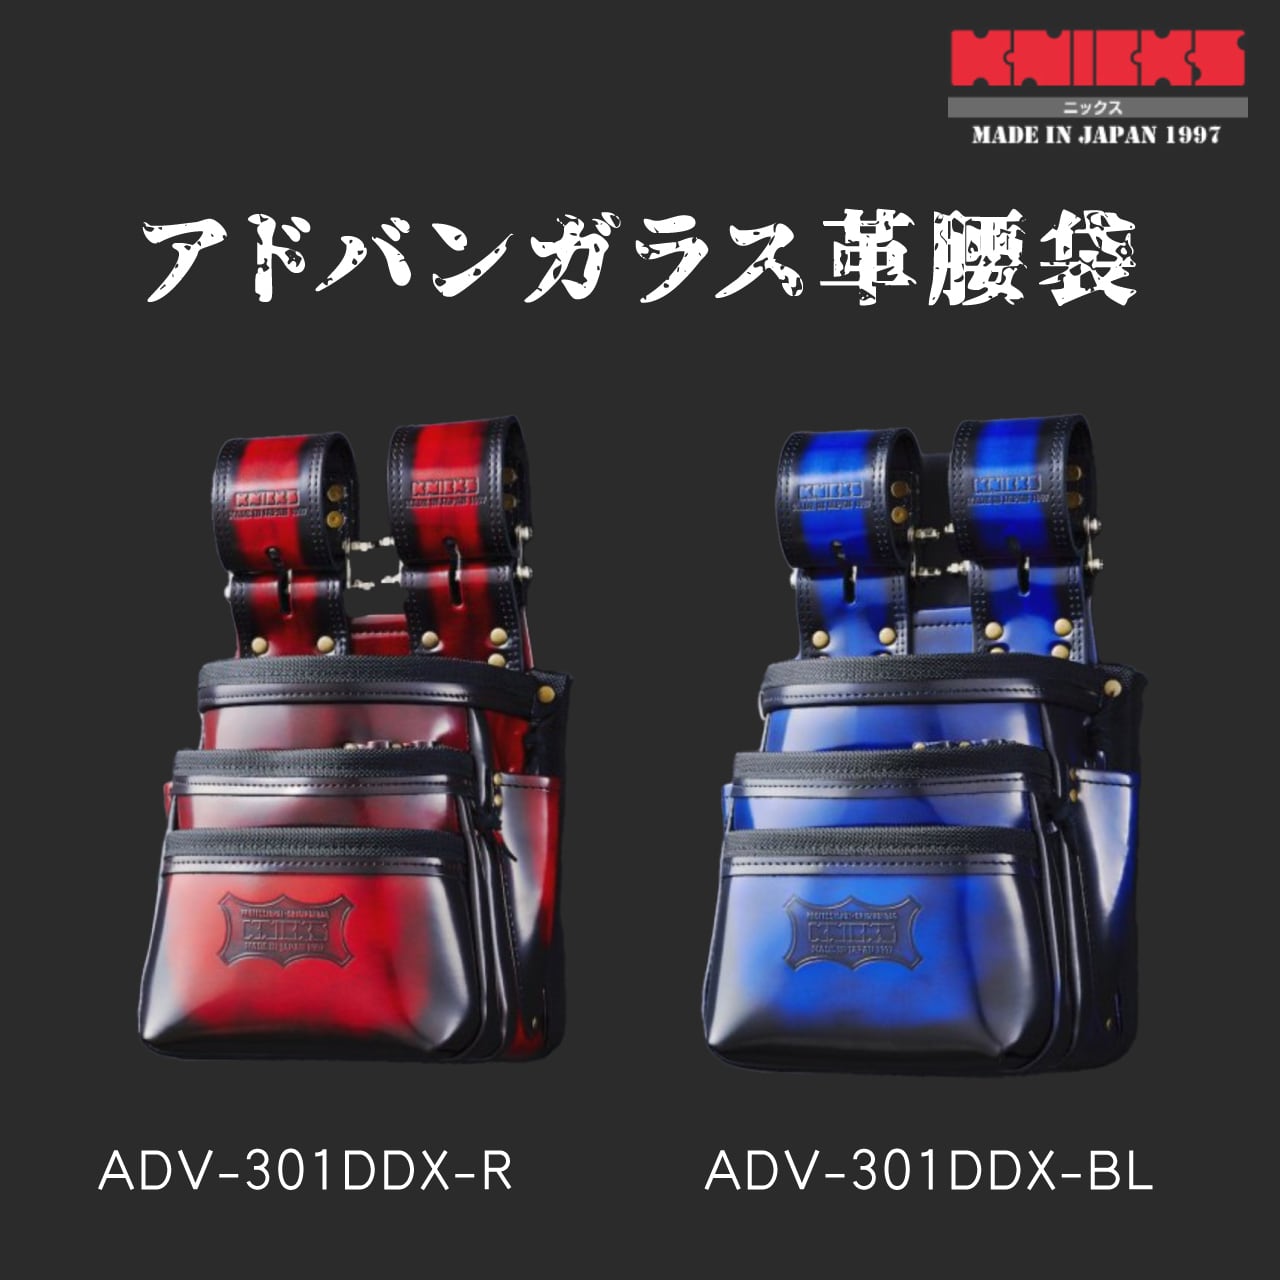 KNICKS(ニックス) ADV-301DDX-BL アドバンガラス革腰袋 青 ブルー ◆ - 2